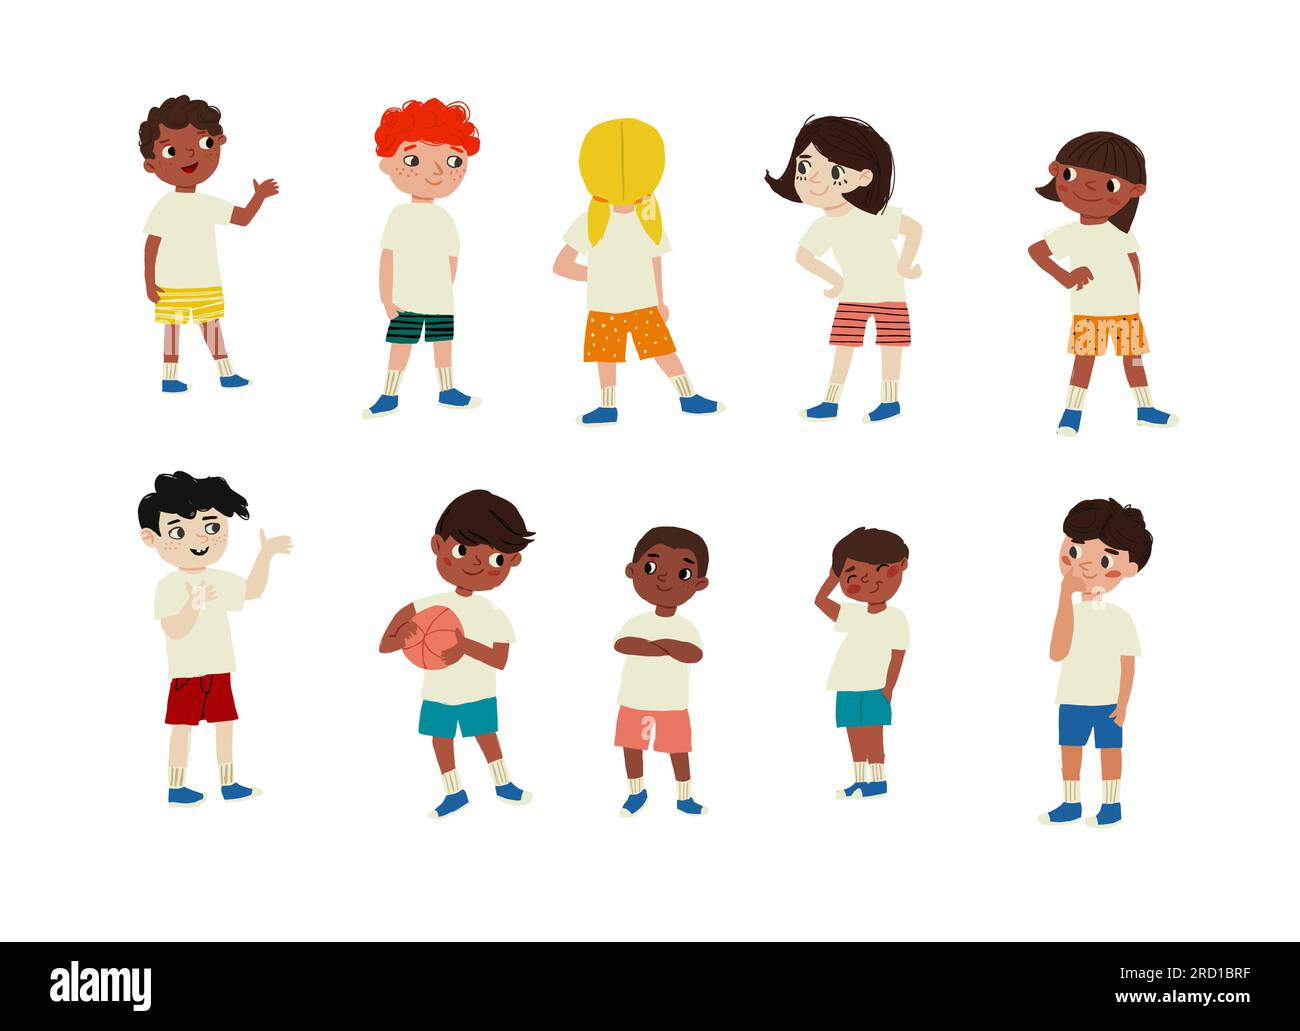 Écoliers dans des vêtements élégants, tshirts blancs, illustrations vectorielles isolées de football sur fond blanc. Illustration vectorielle Illustration de Vecteur